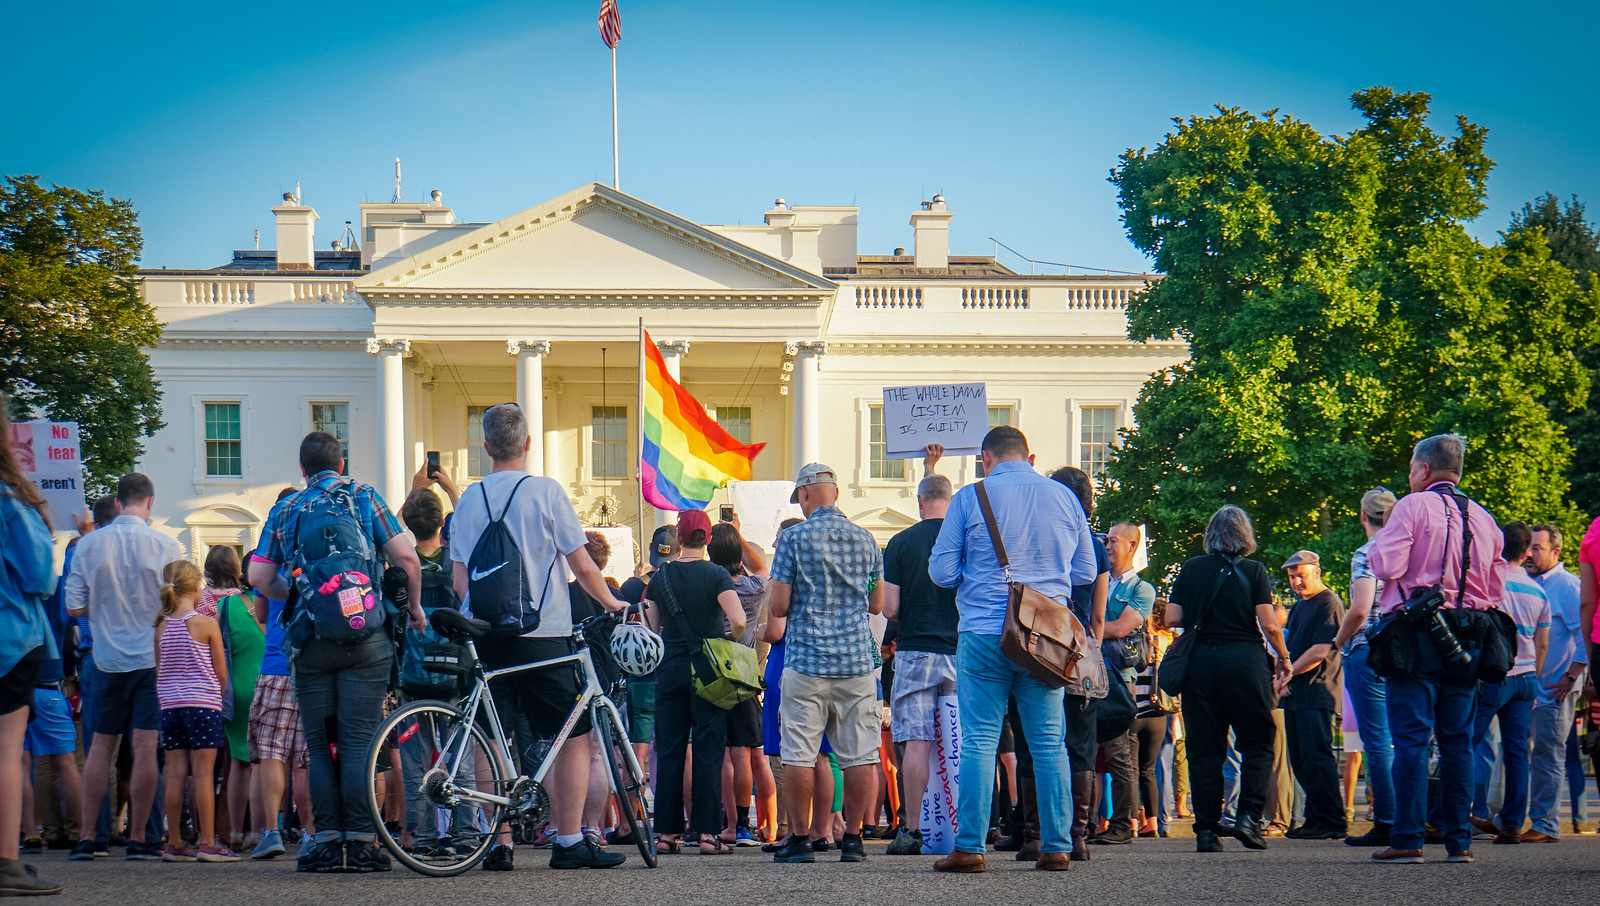 2017.07.26 Protest Trans Military Ban, White House, Washington DC USA 7637